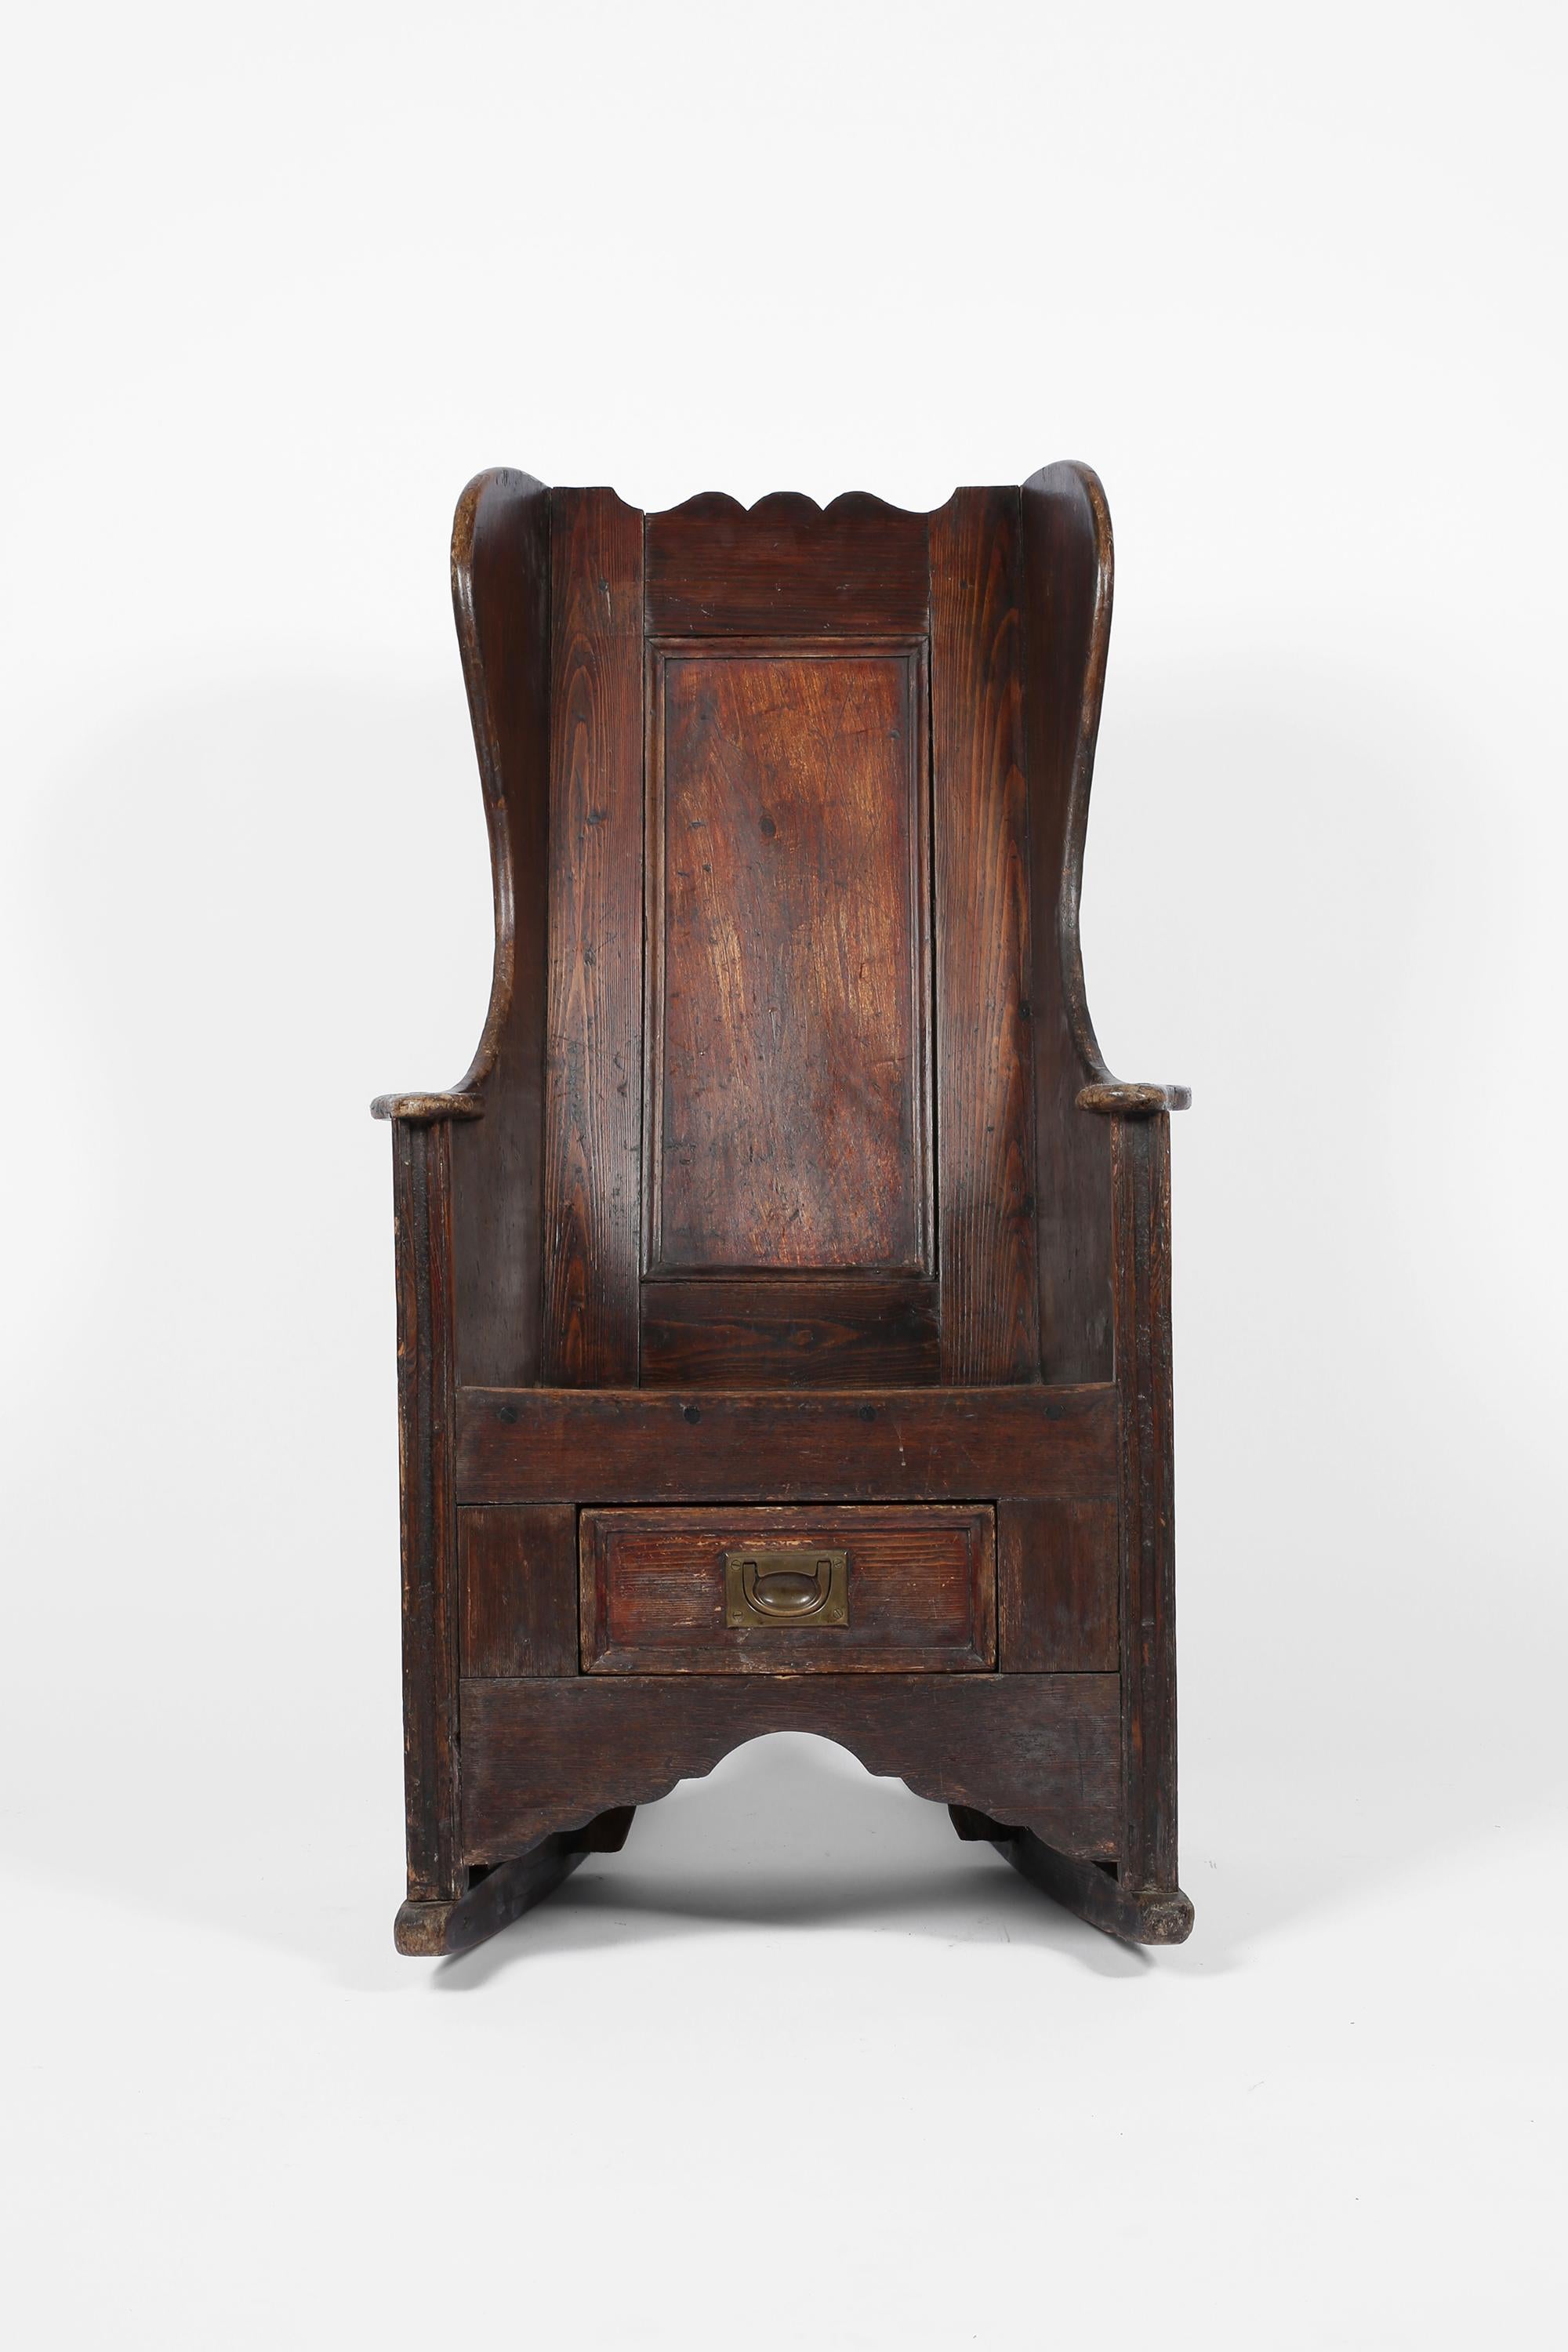 Un bel exemple d'une grande chaise d'agneau vernaculaire du 18e siècle. Originaire de la côte de Fylde et construit à partir d'une combinaison d'orme patiné, de pin et de bois fruitier. Il repose sur sa base à bascule d'origine et le tiroir est doté